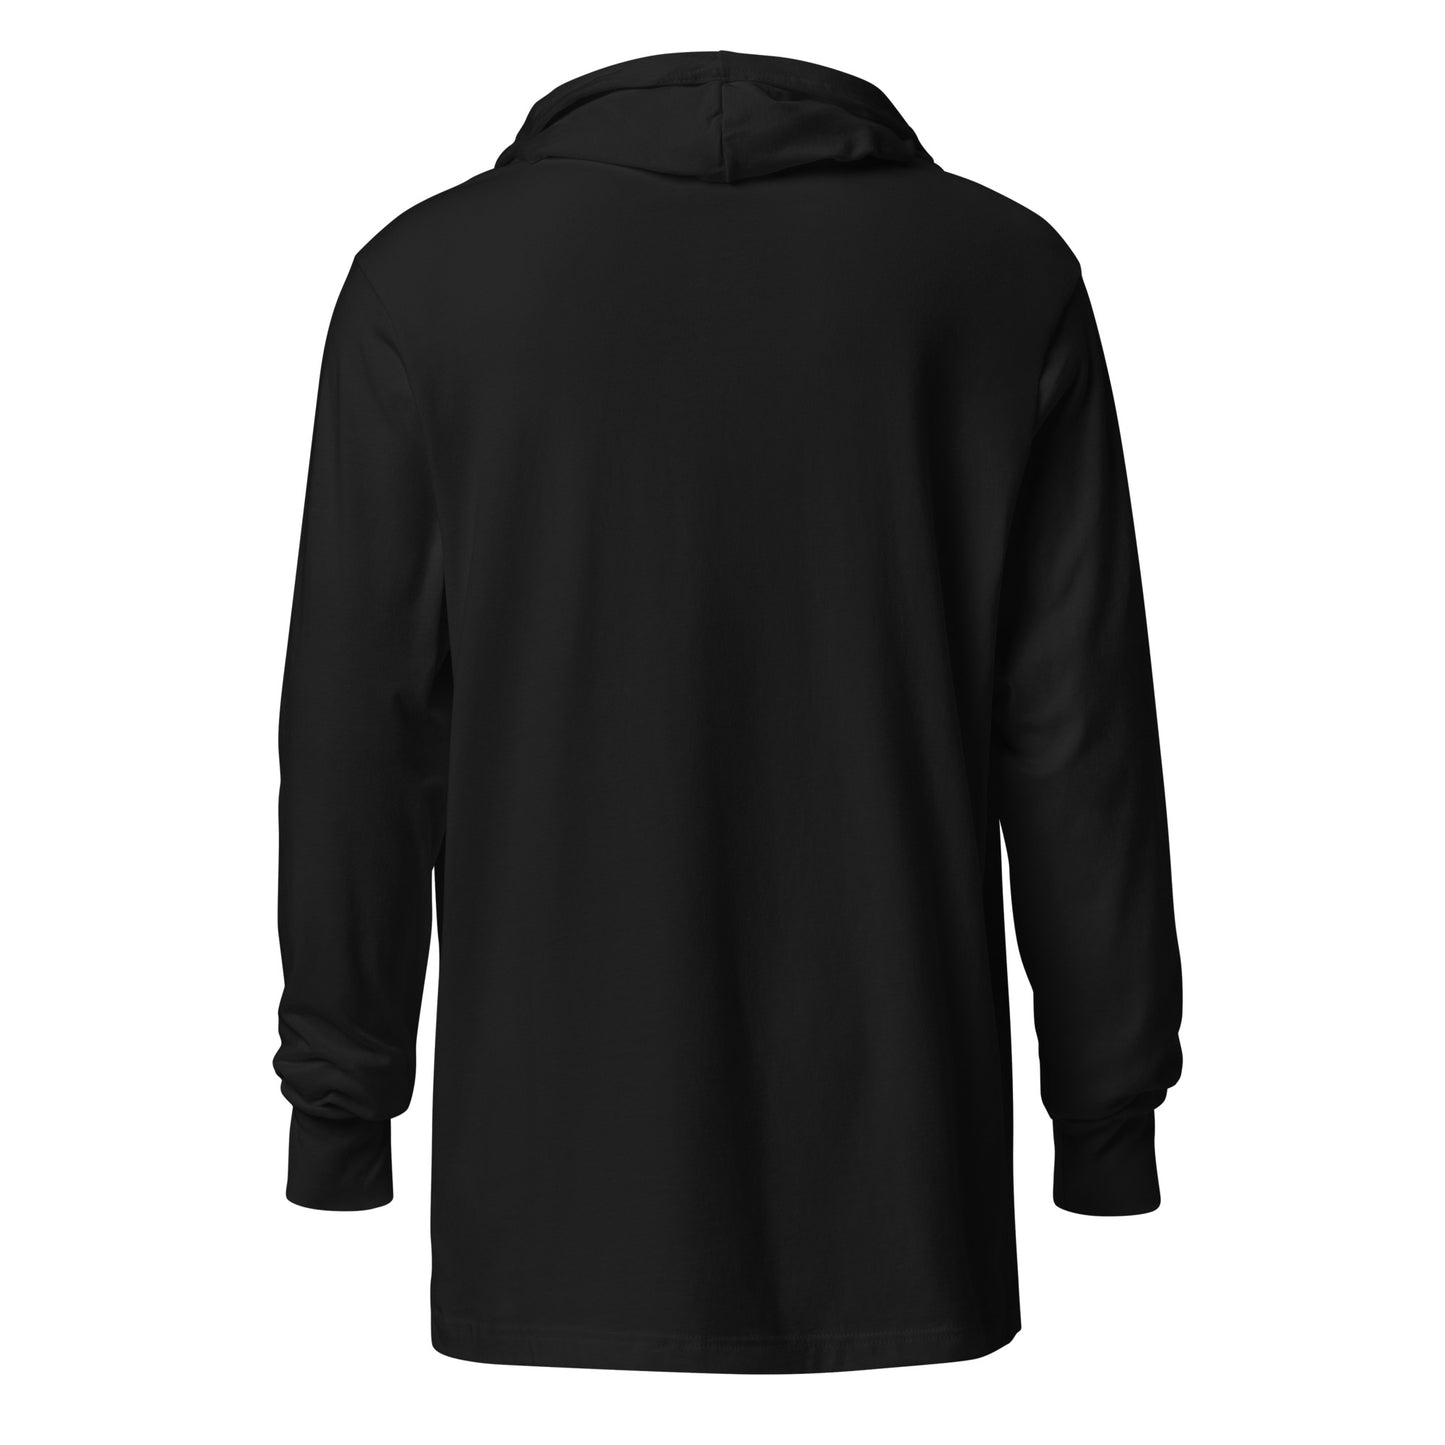 Golf, Titties & NFL Football Hooded Long-Sleeve T-Shirt